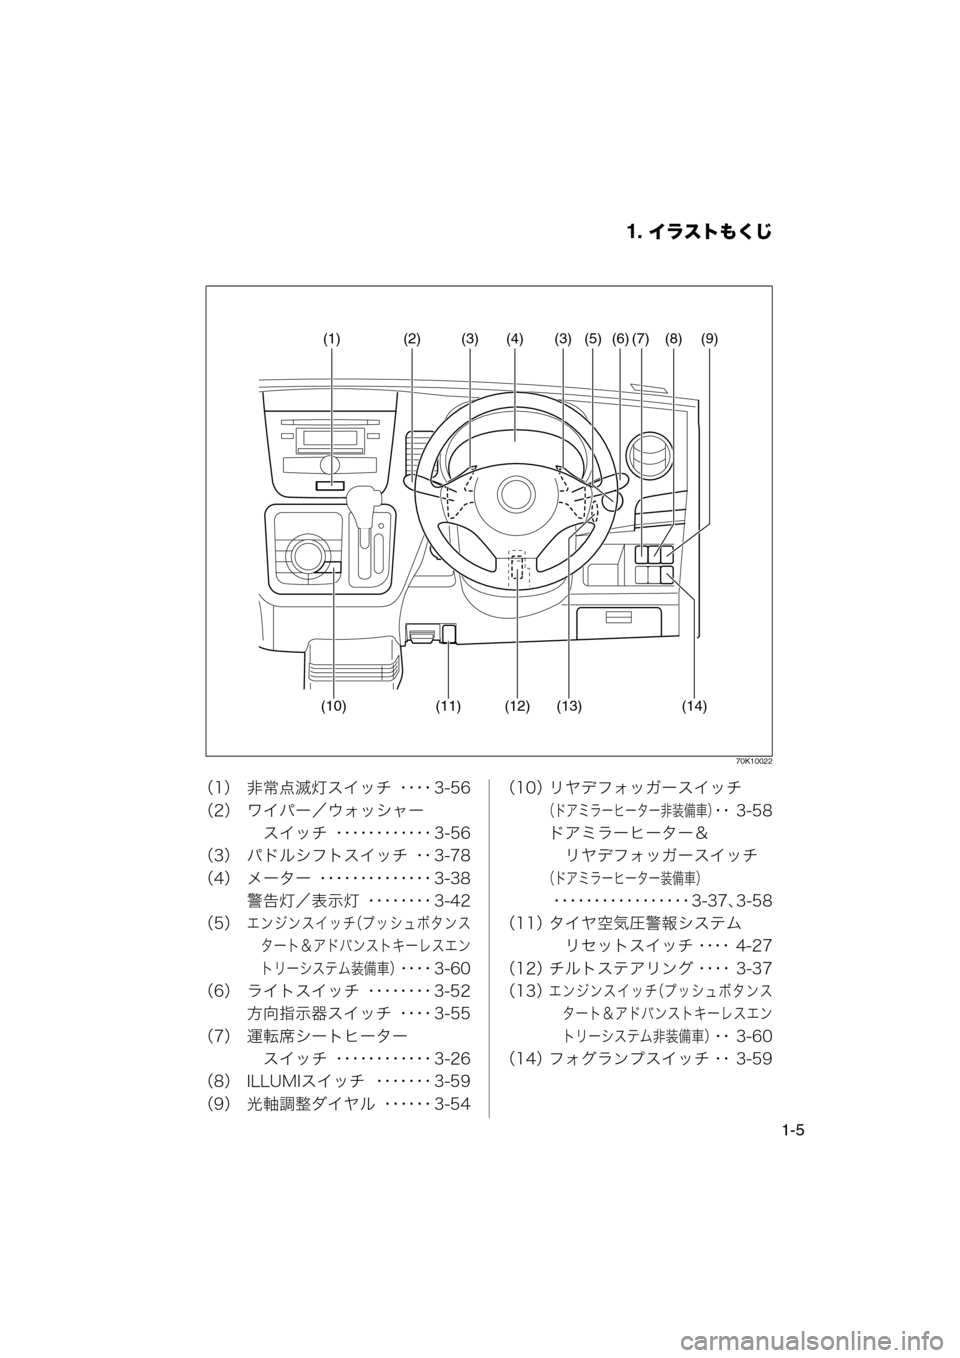 MAZDA MODEL AZ-WAGON 2012  ワゴン｜取扱説明書 (in Japanese) 1. イラストもくじ
1-5
70K10022
（1） 非常点滅灯スイッチ ････ 3-56
（2） ワイパー／ウォッシャー　スイッチ ････････････ 3-56
（3） �